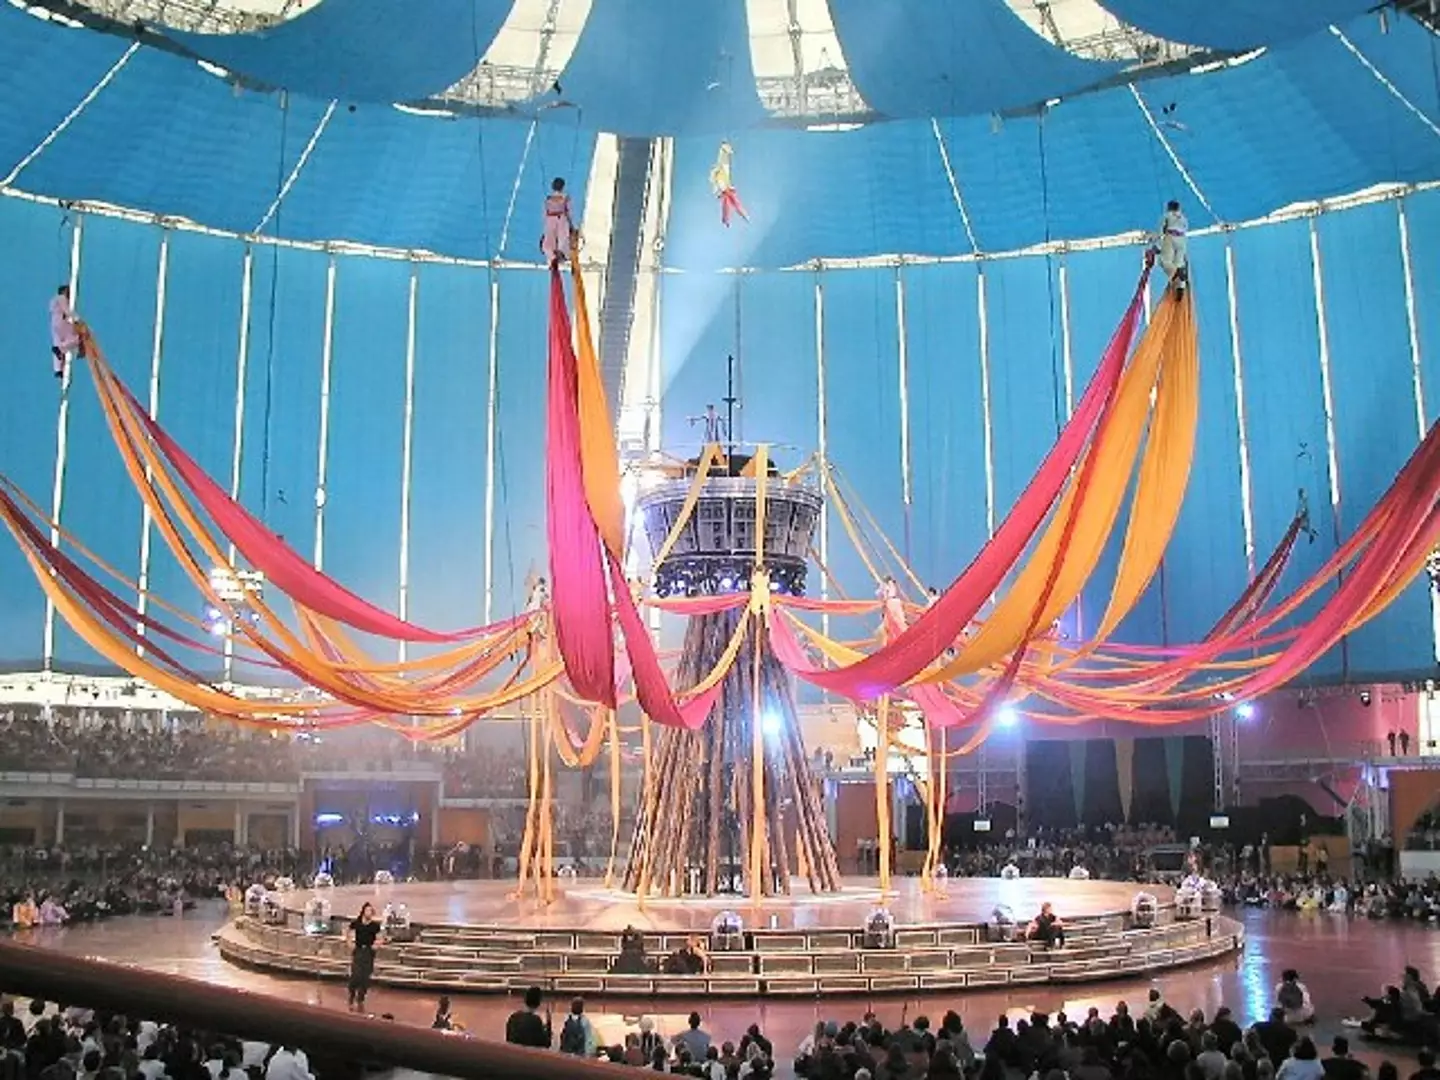 Inside the Millennium Dome (Chris J Dixon / Geograph)